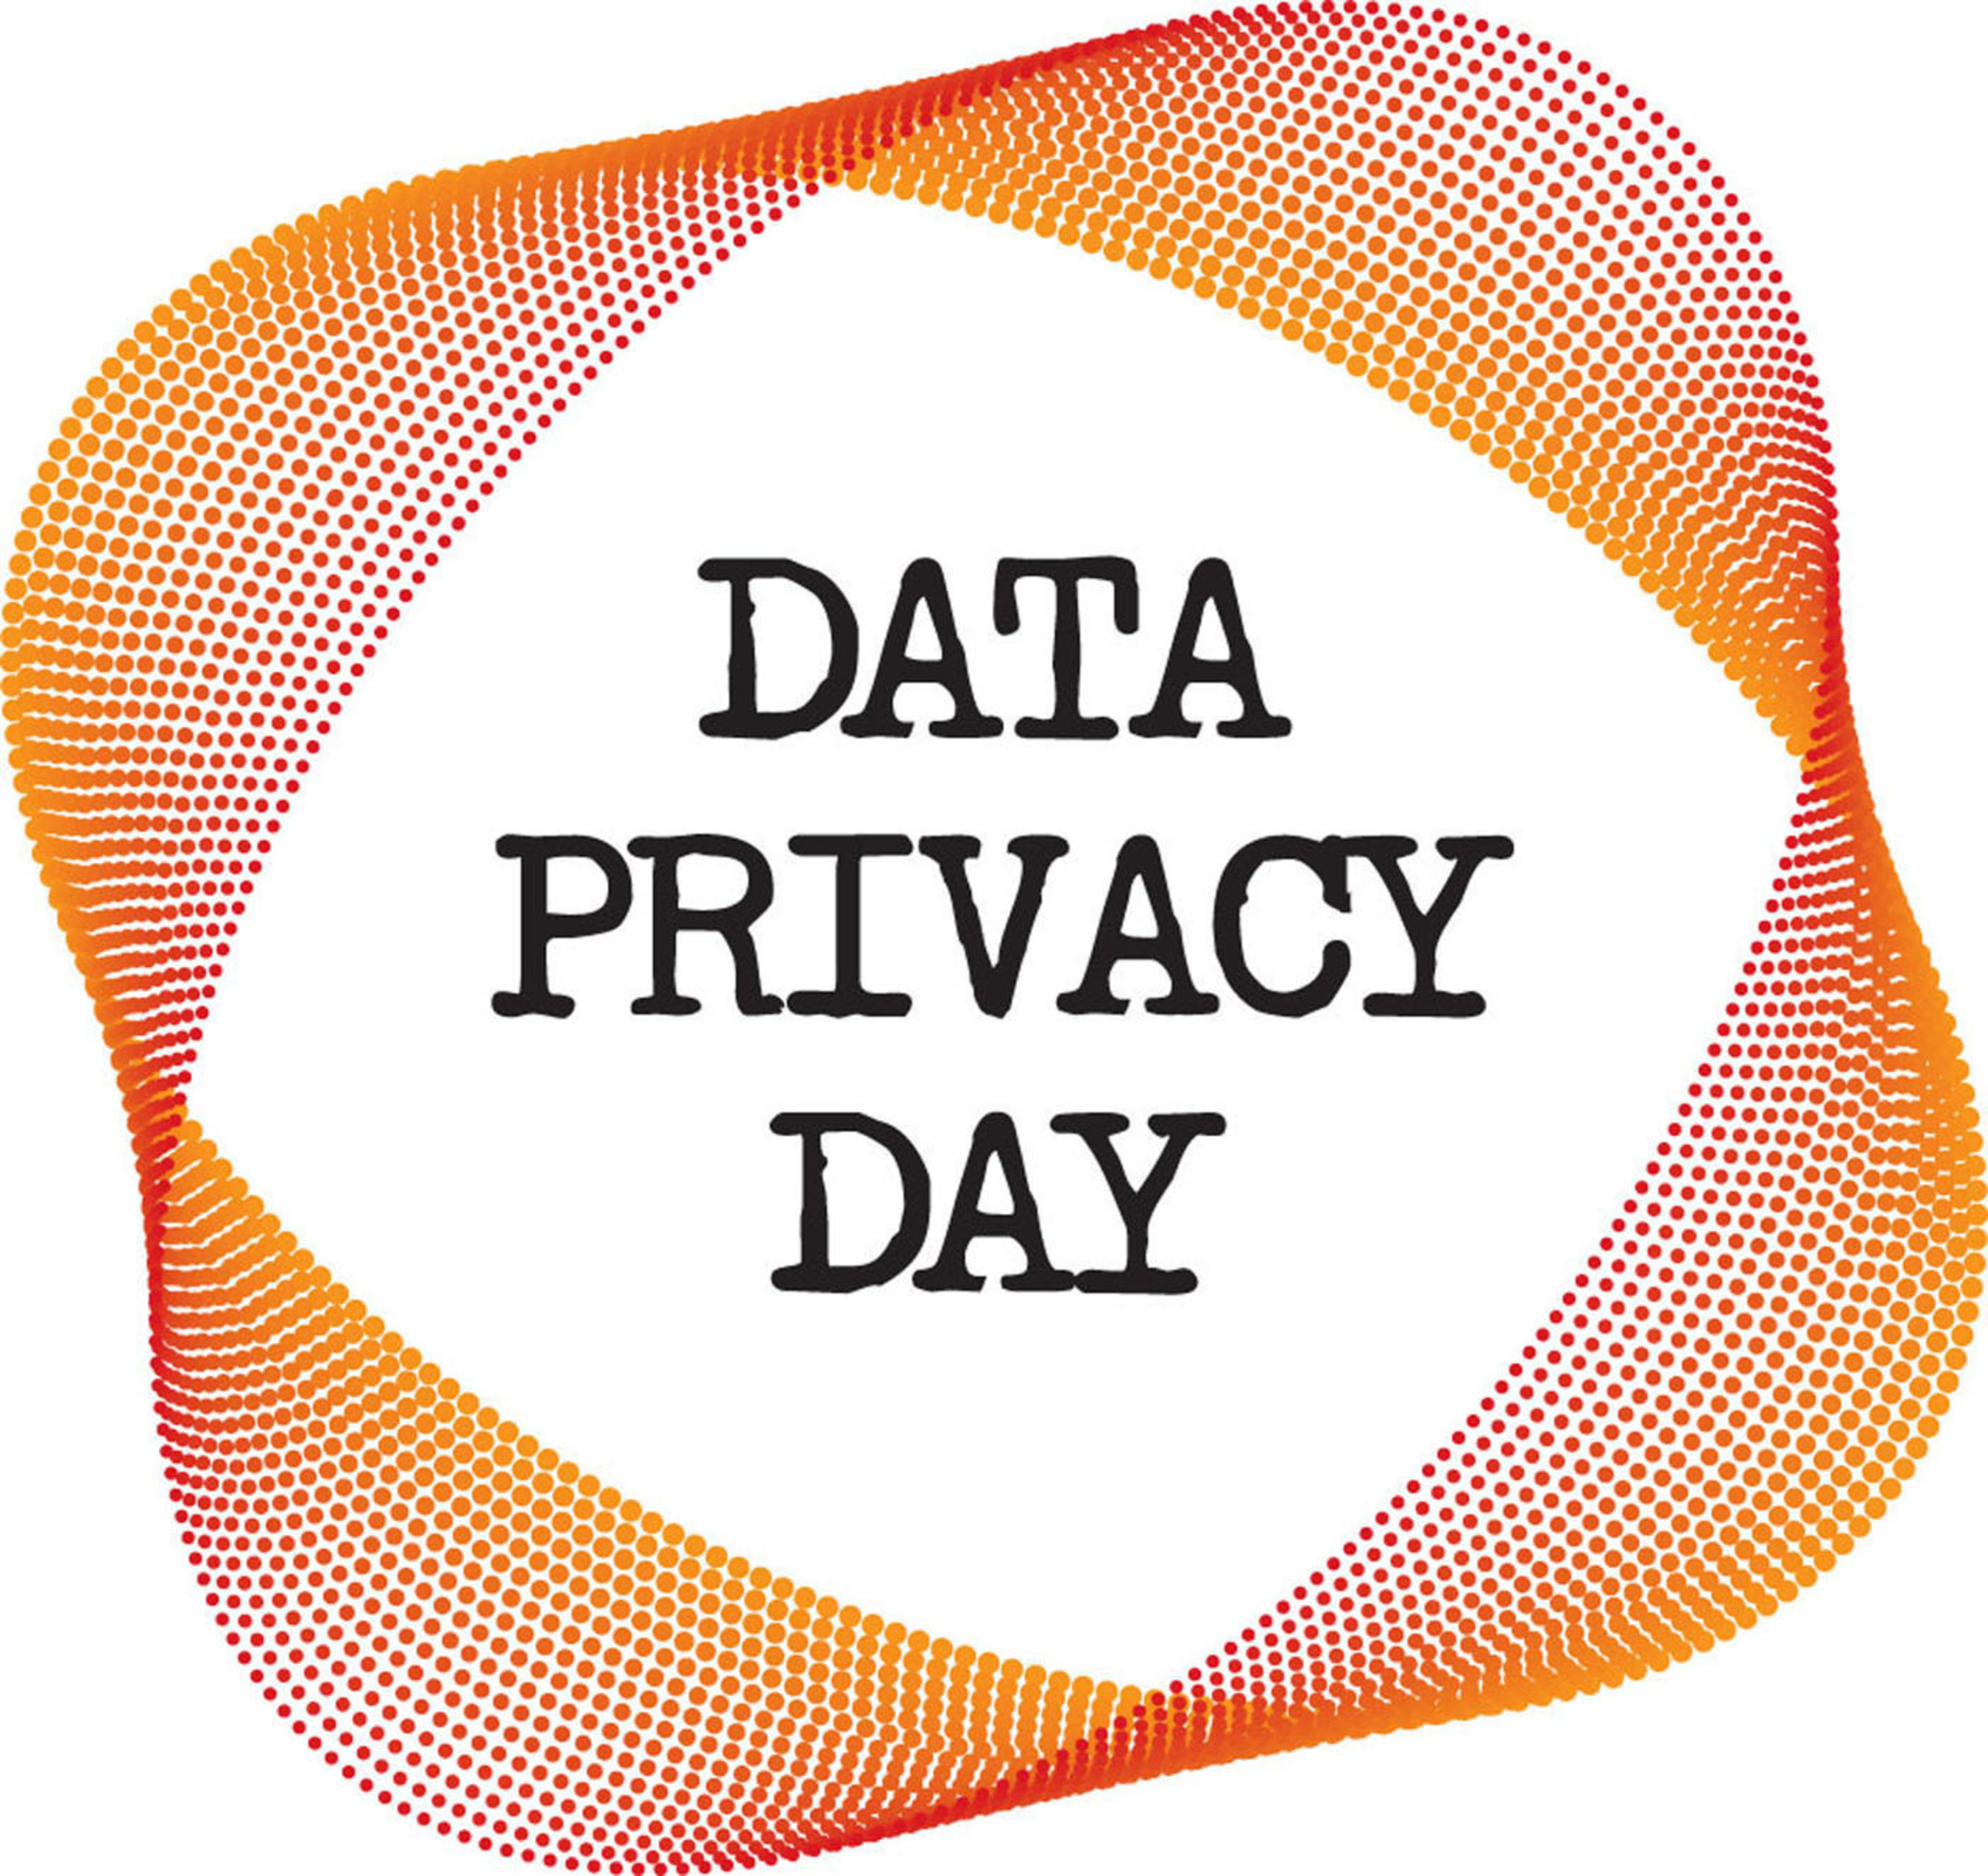 Data Privacy Day Logo. (PRNewsFoto/National Cyber Security Alliance) (PRNewsFoto/)